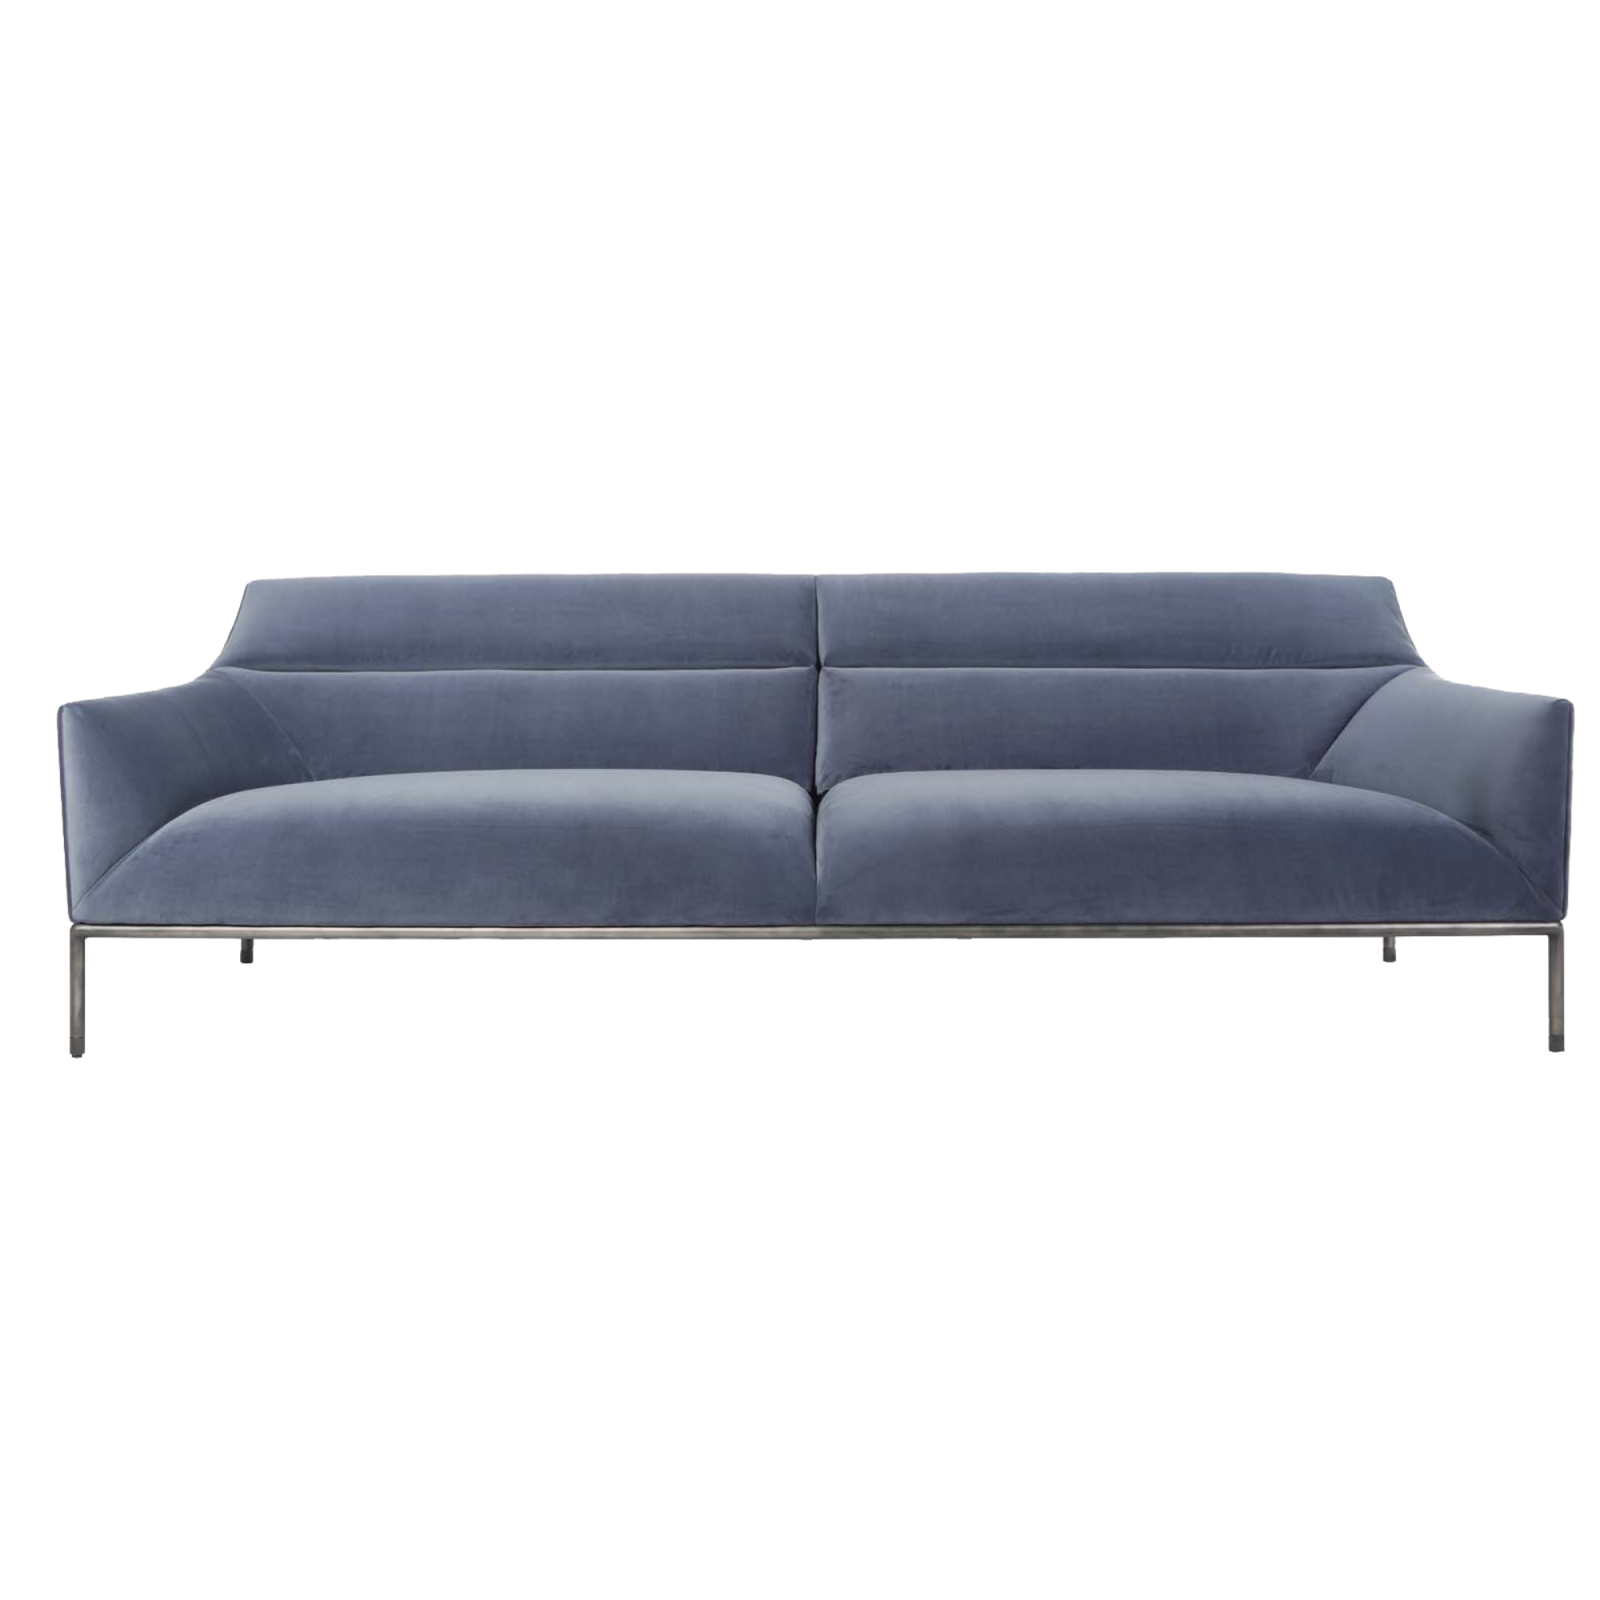 Blue colored Curve Sofa